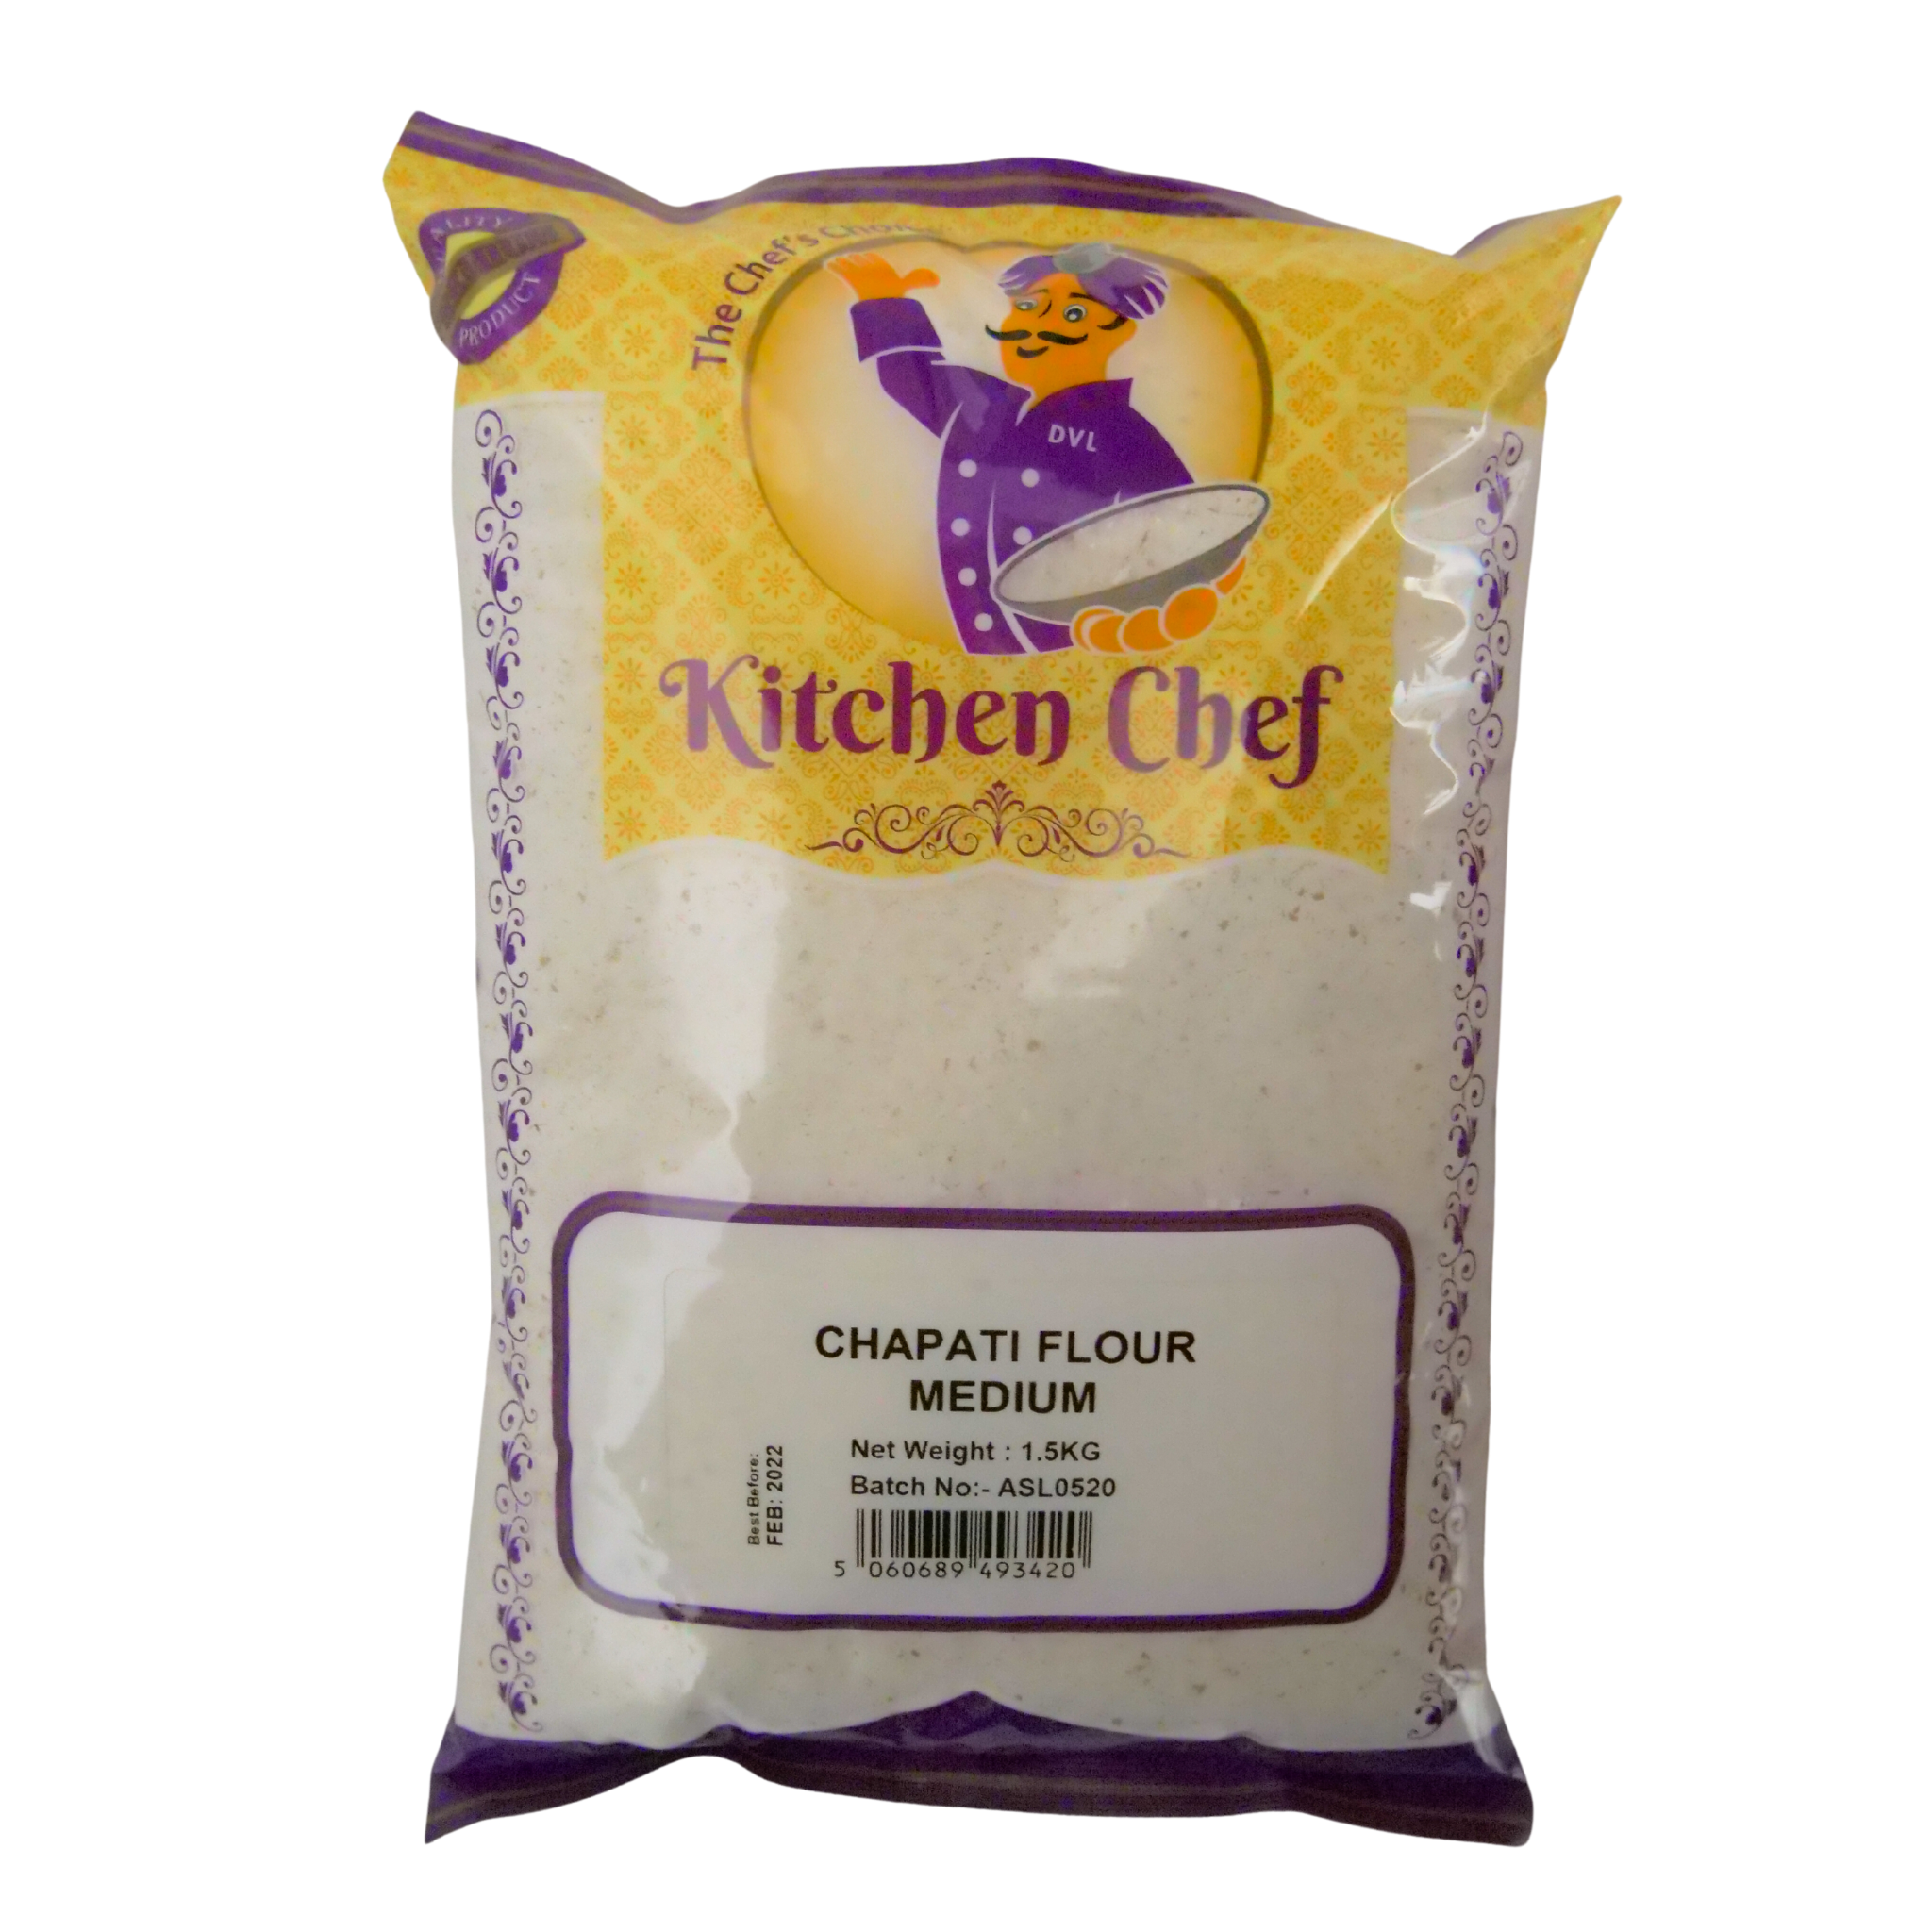 Chappati Flour Medium